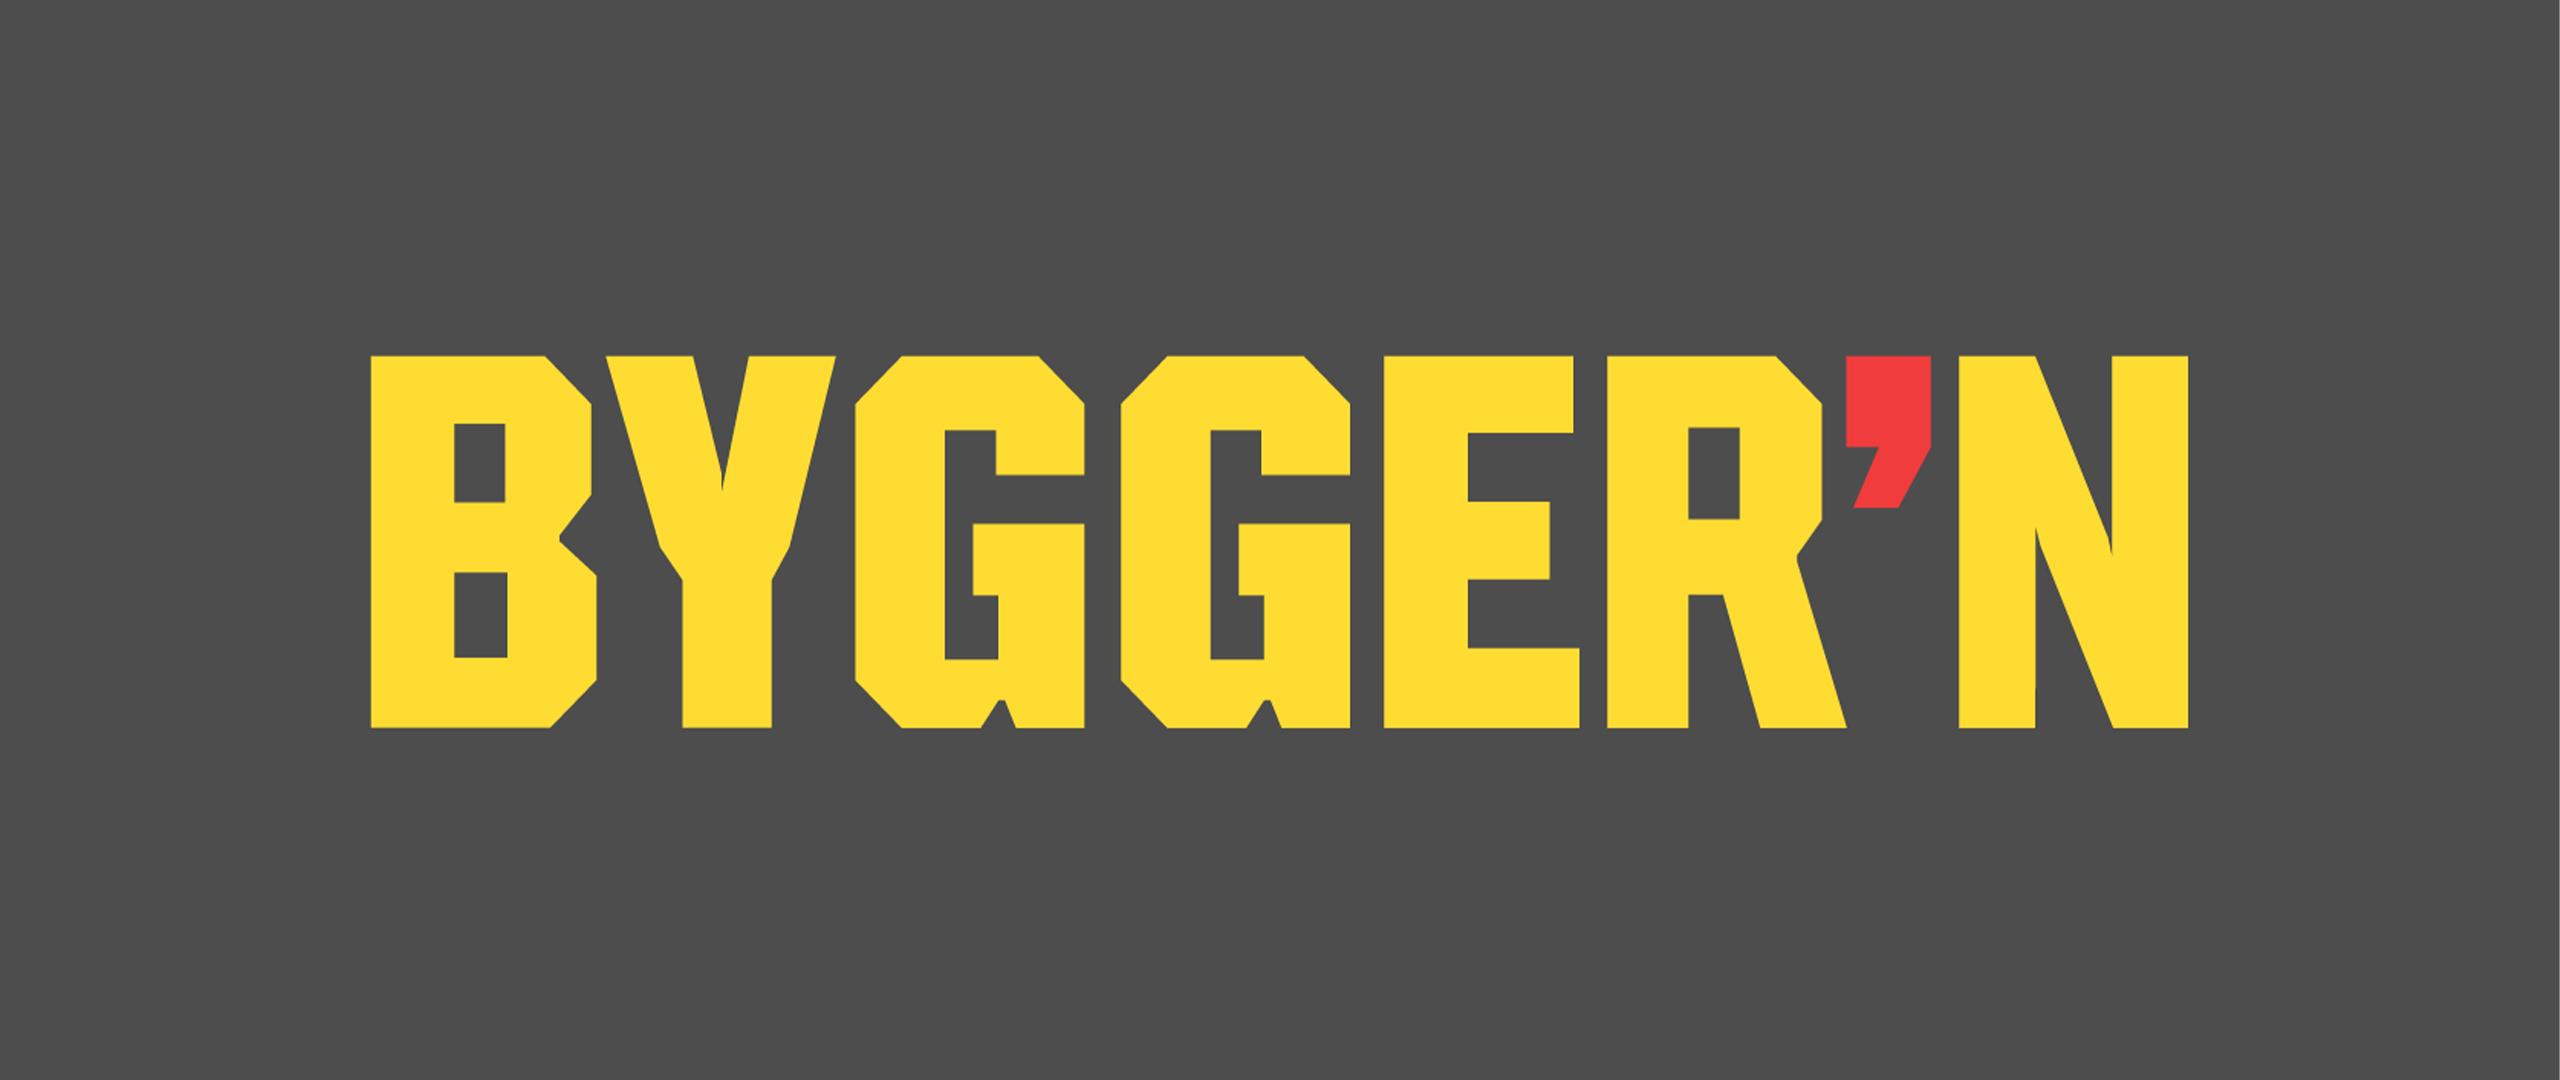 Byggern Logo 2560X1080